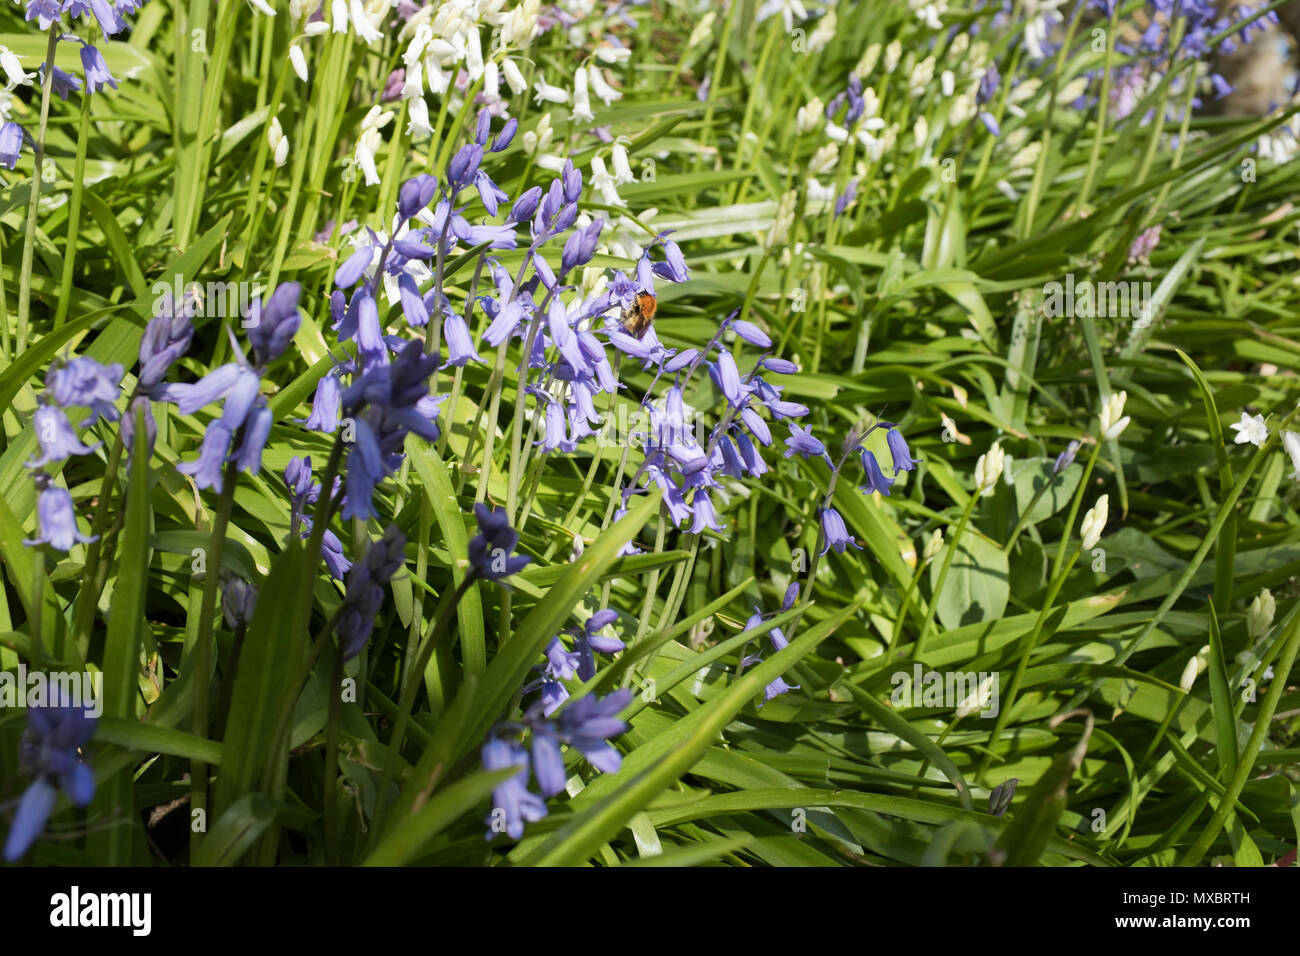 dh jacinthoides non scripta FLORE BLUECLOCHES Royaume-Uni ECOSSE Bleu violet bluebell volant miel abeille collectant nectar fleur pourpre Banque D'Images